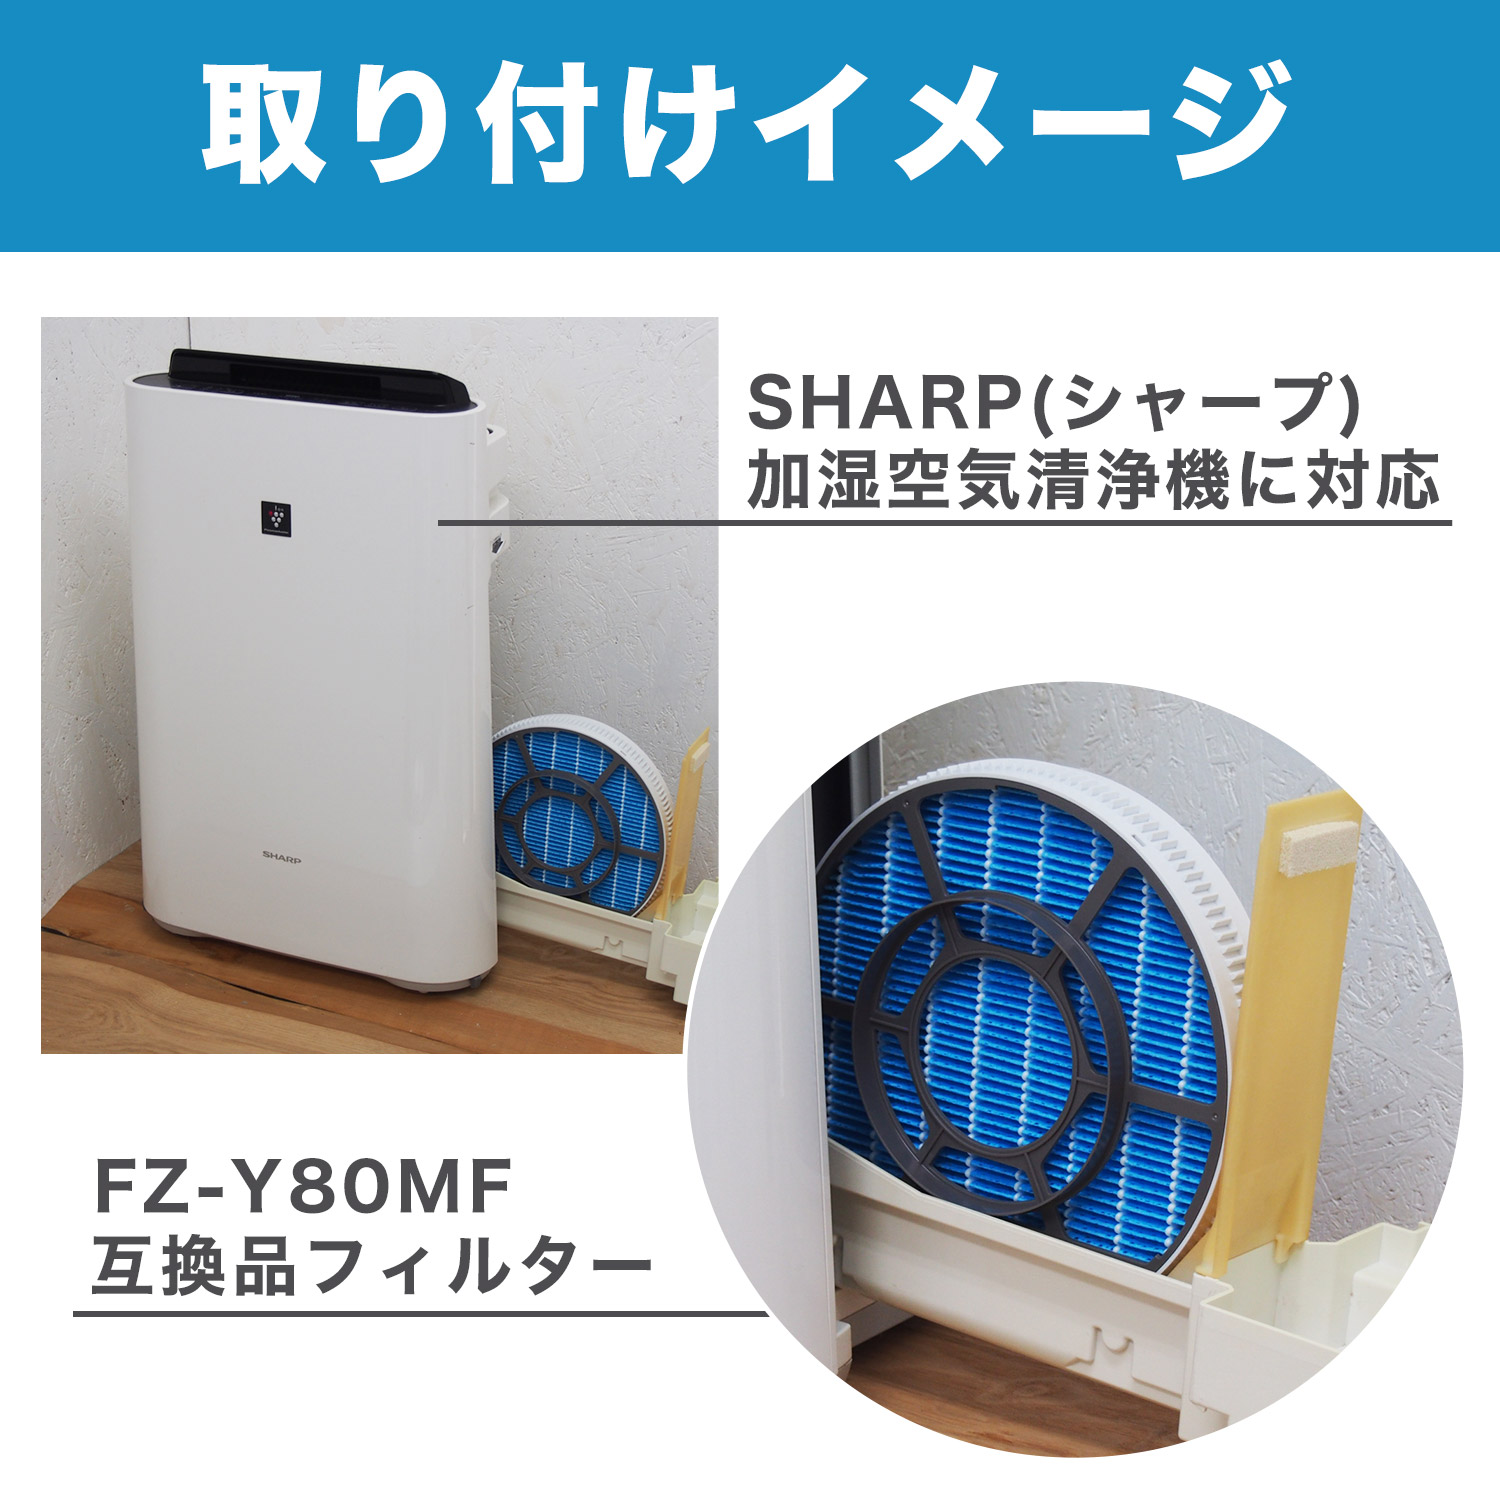 9個まとめ売り) SHARP 空気清浄機 キッチン用脱臭フィルター FZKF50K1